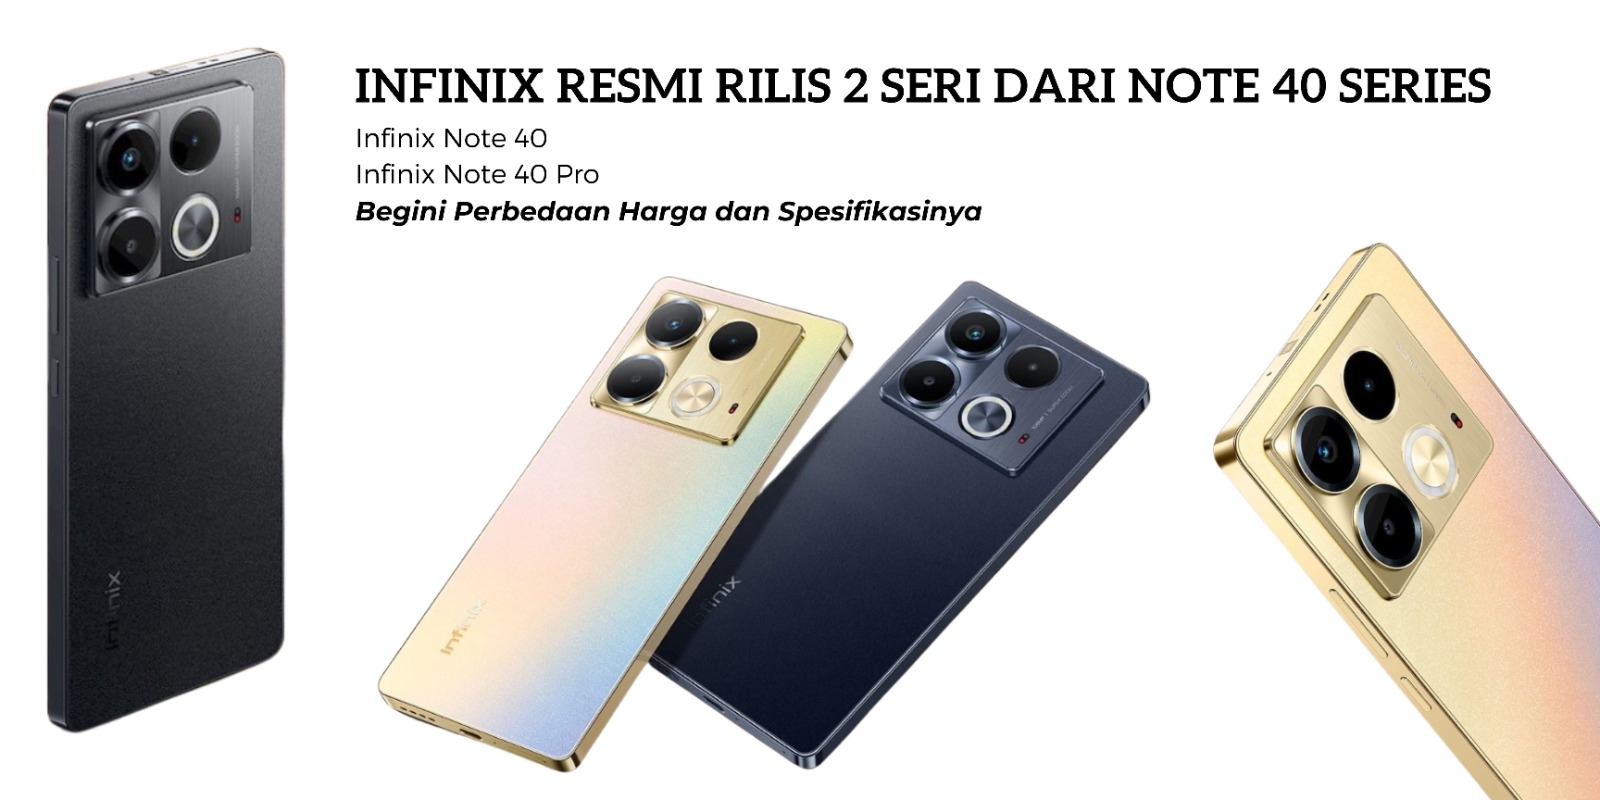 Infinix Resmi Rilis 2 Seri Note 40 di Indonesia!  Apa Bedanya dan Silakan Cek Harganya